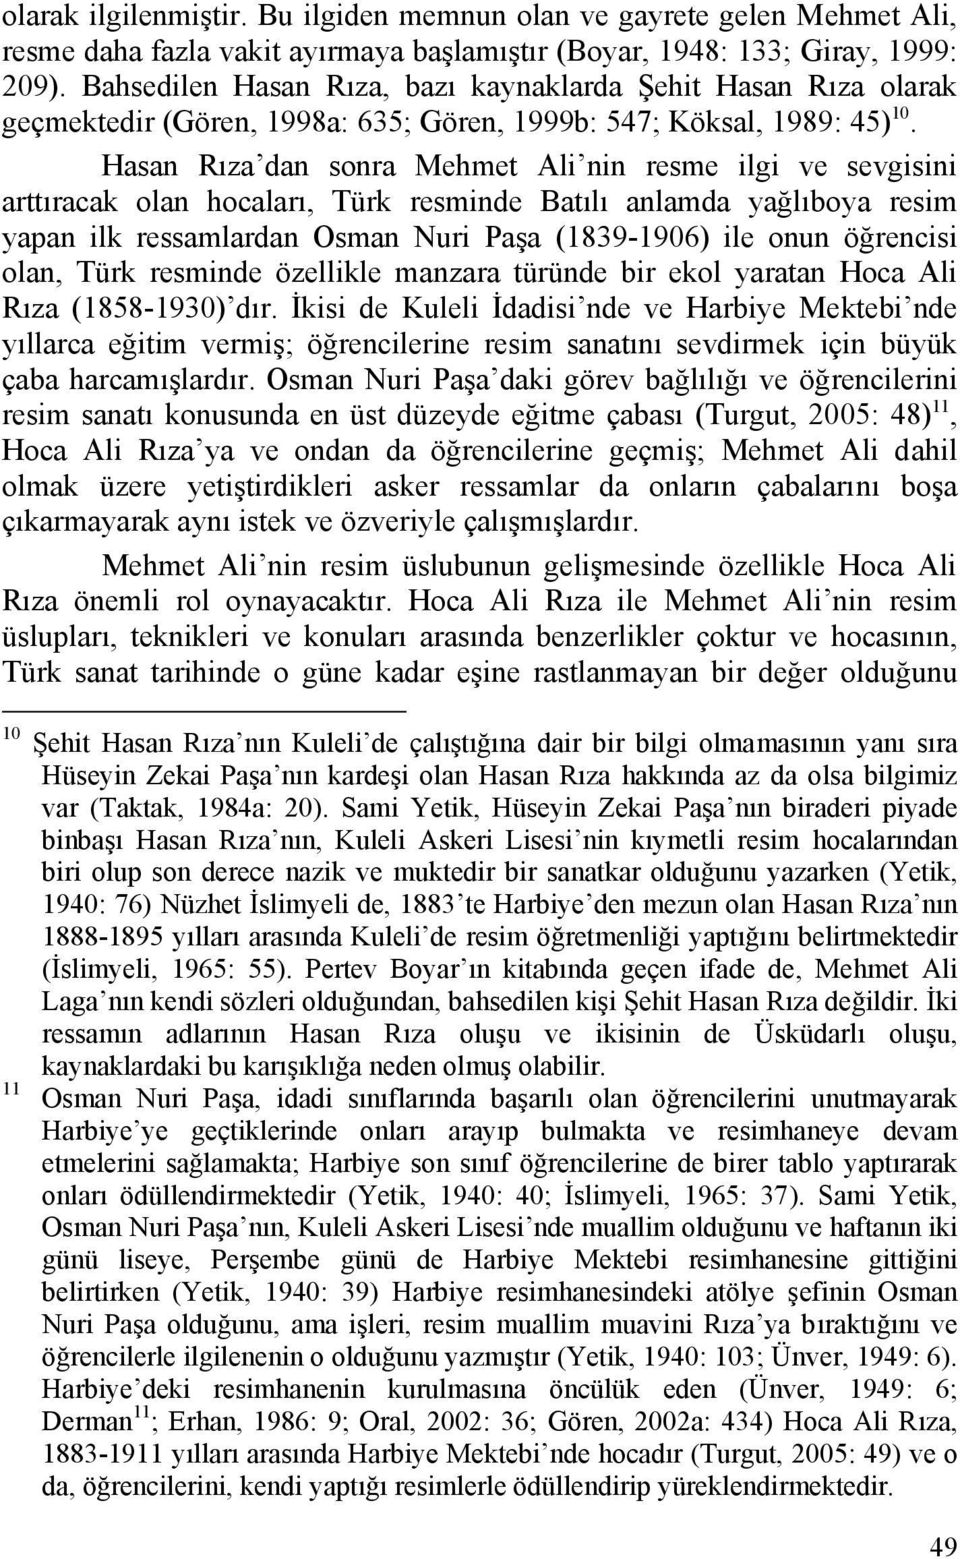 Hasan Rıza dan sonra Mehmet Ali nin resme ilgi ve sevgisini arttıracak olan hocaları, Türk resminde Batılı anlamda yağlıboya resim yapan ilk ressamlardan Osman Nuri Paşa (1839-1906) ile onun